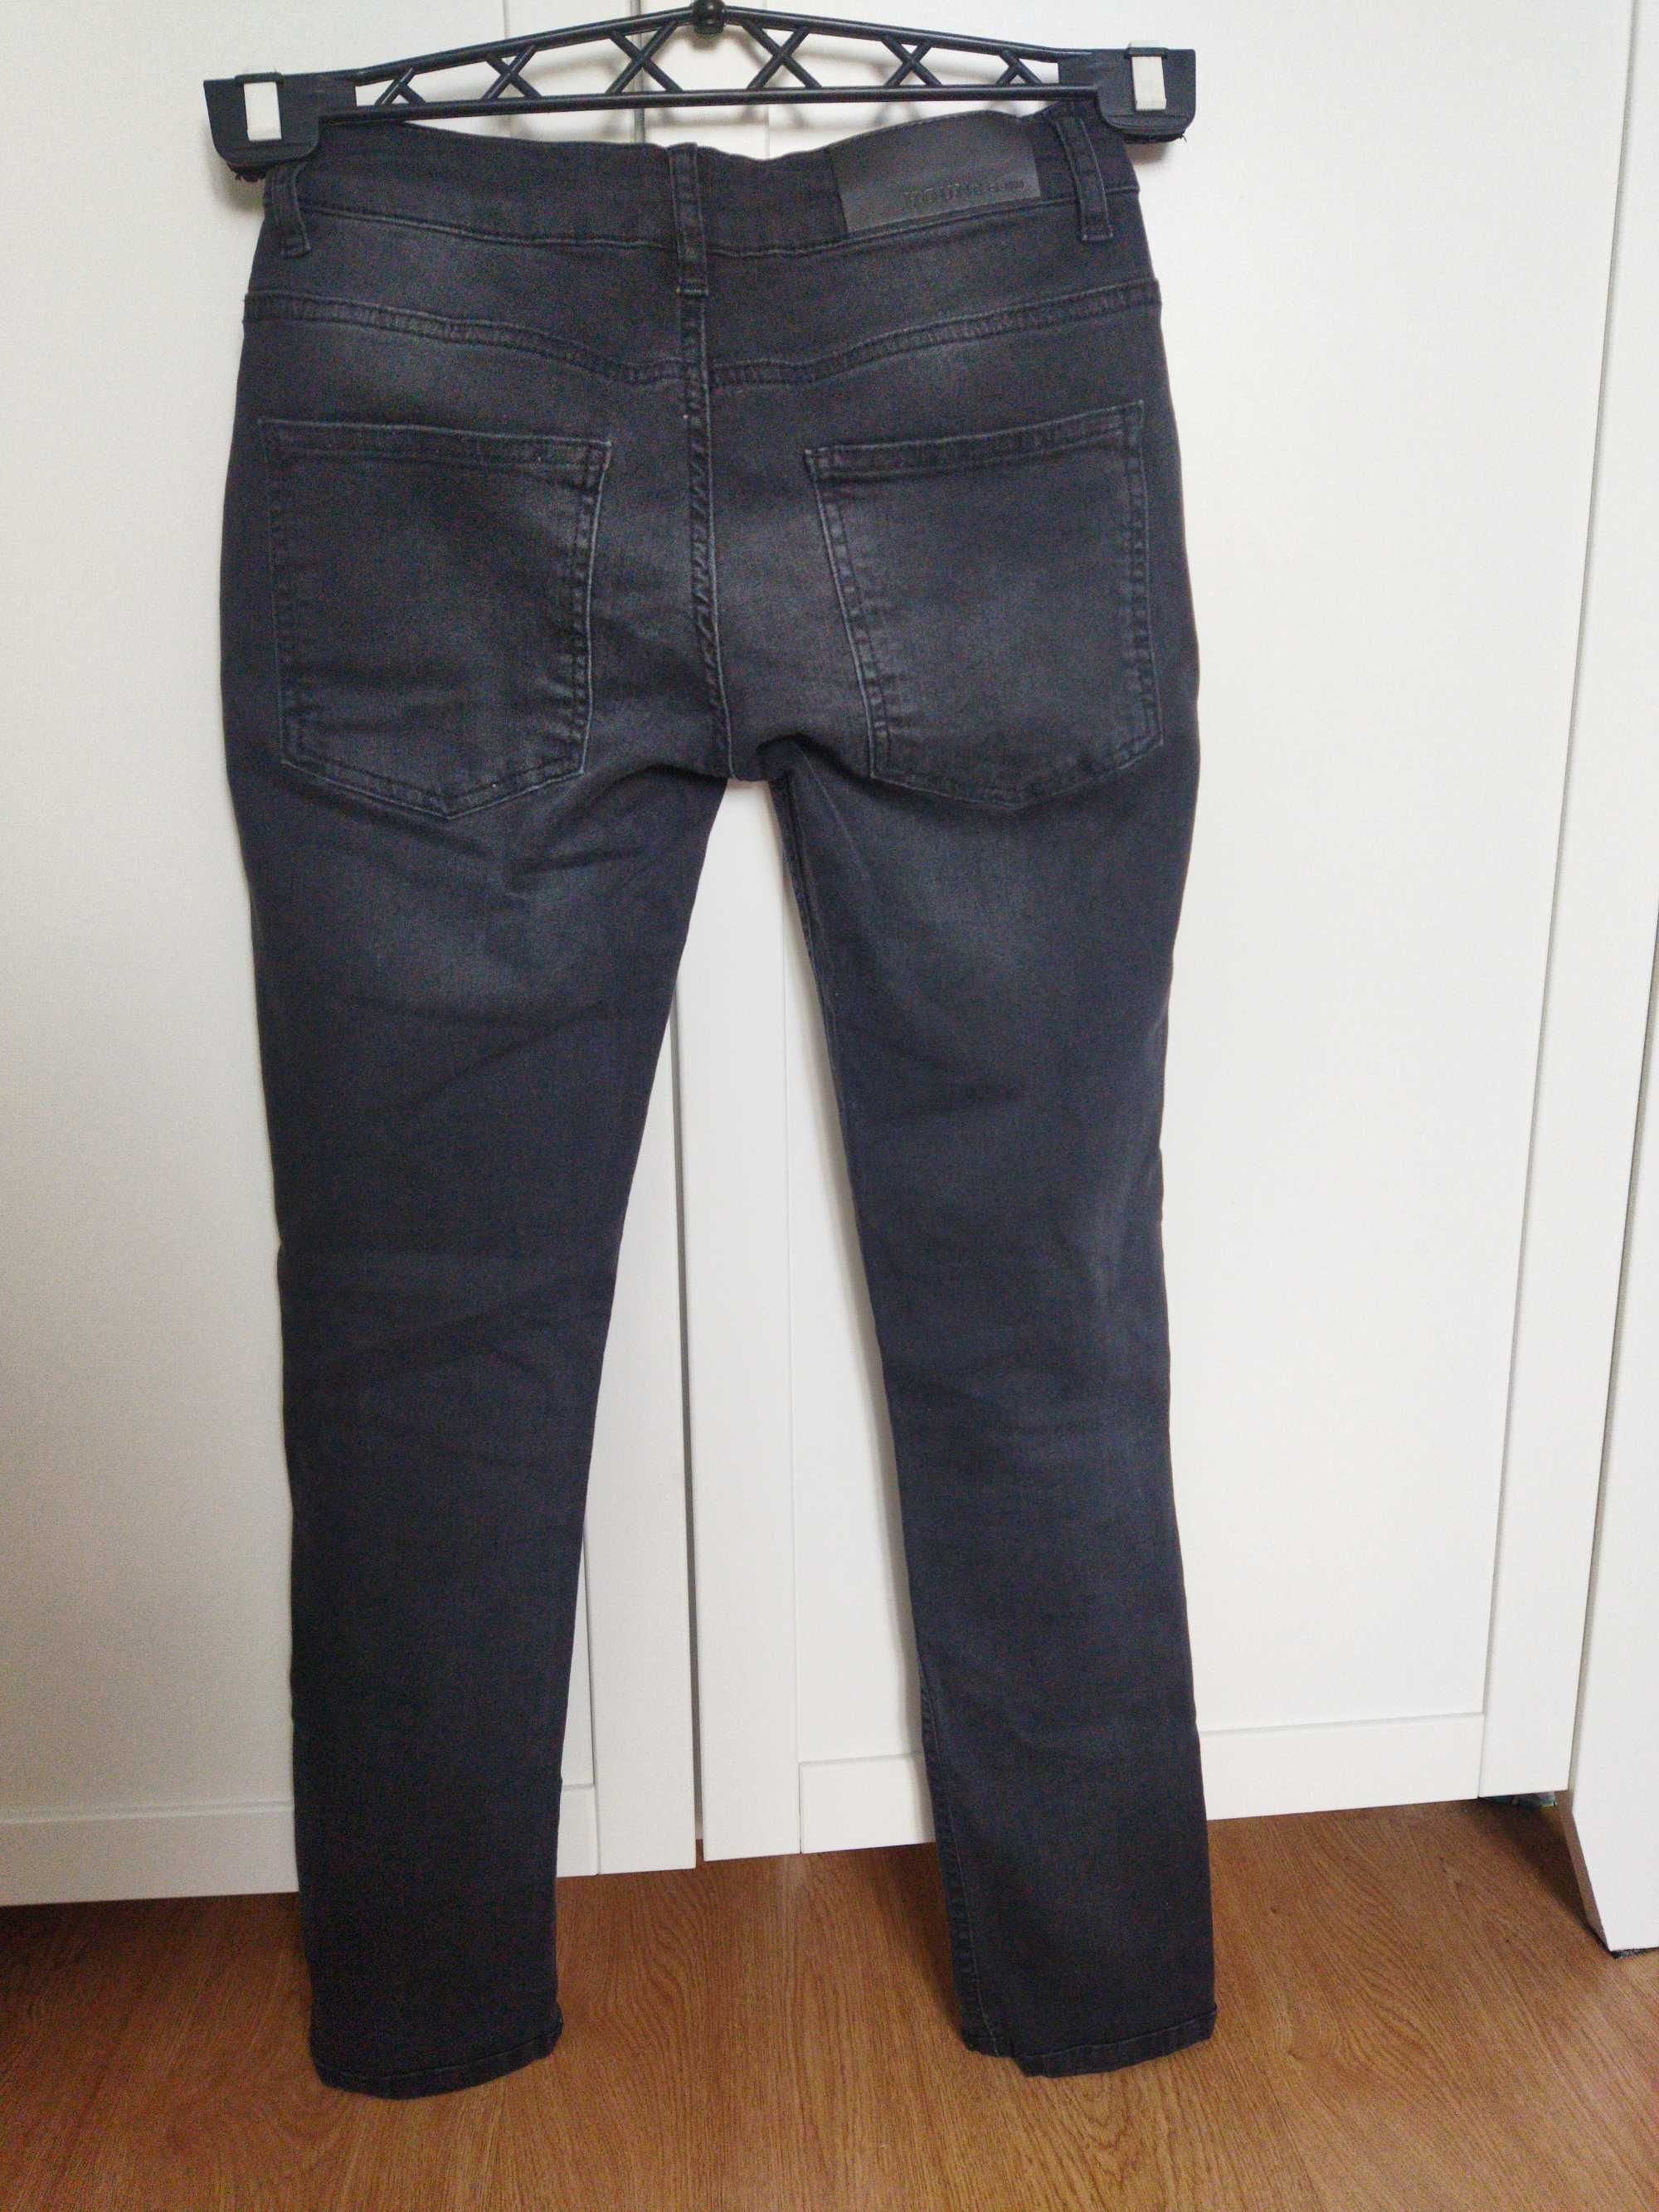 Spodnie Hound jeans r. XS/34 k.czarny.